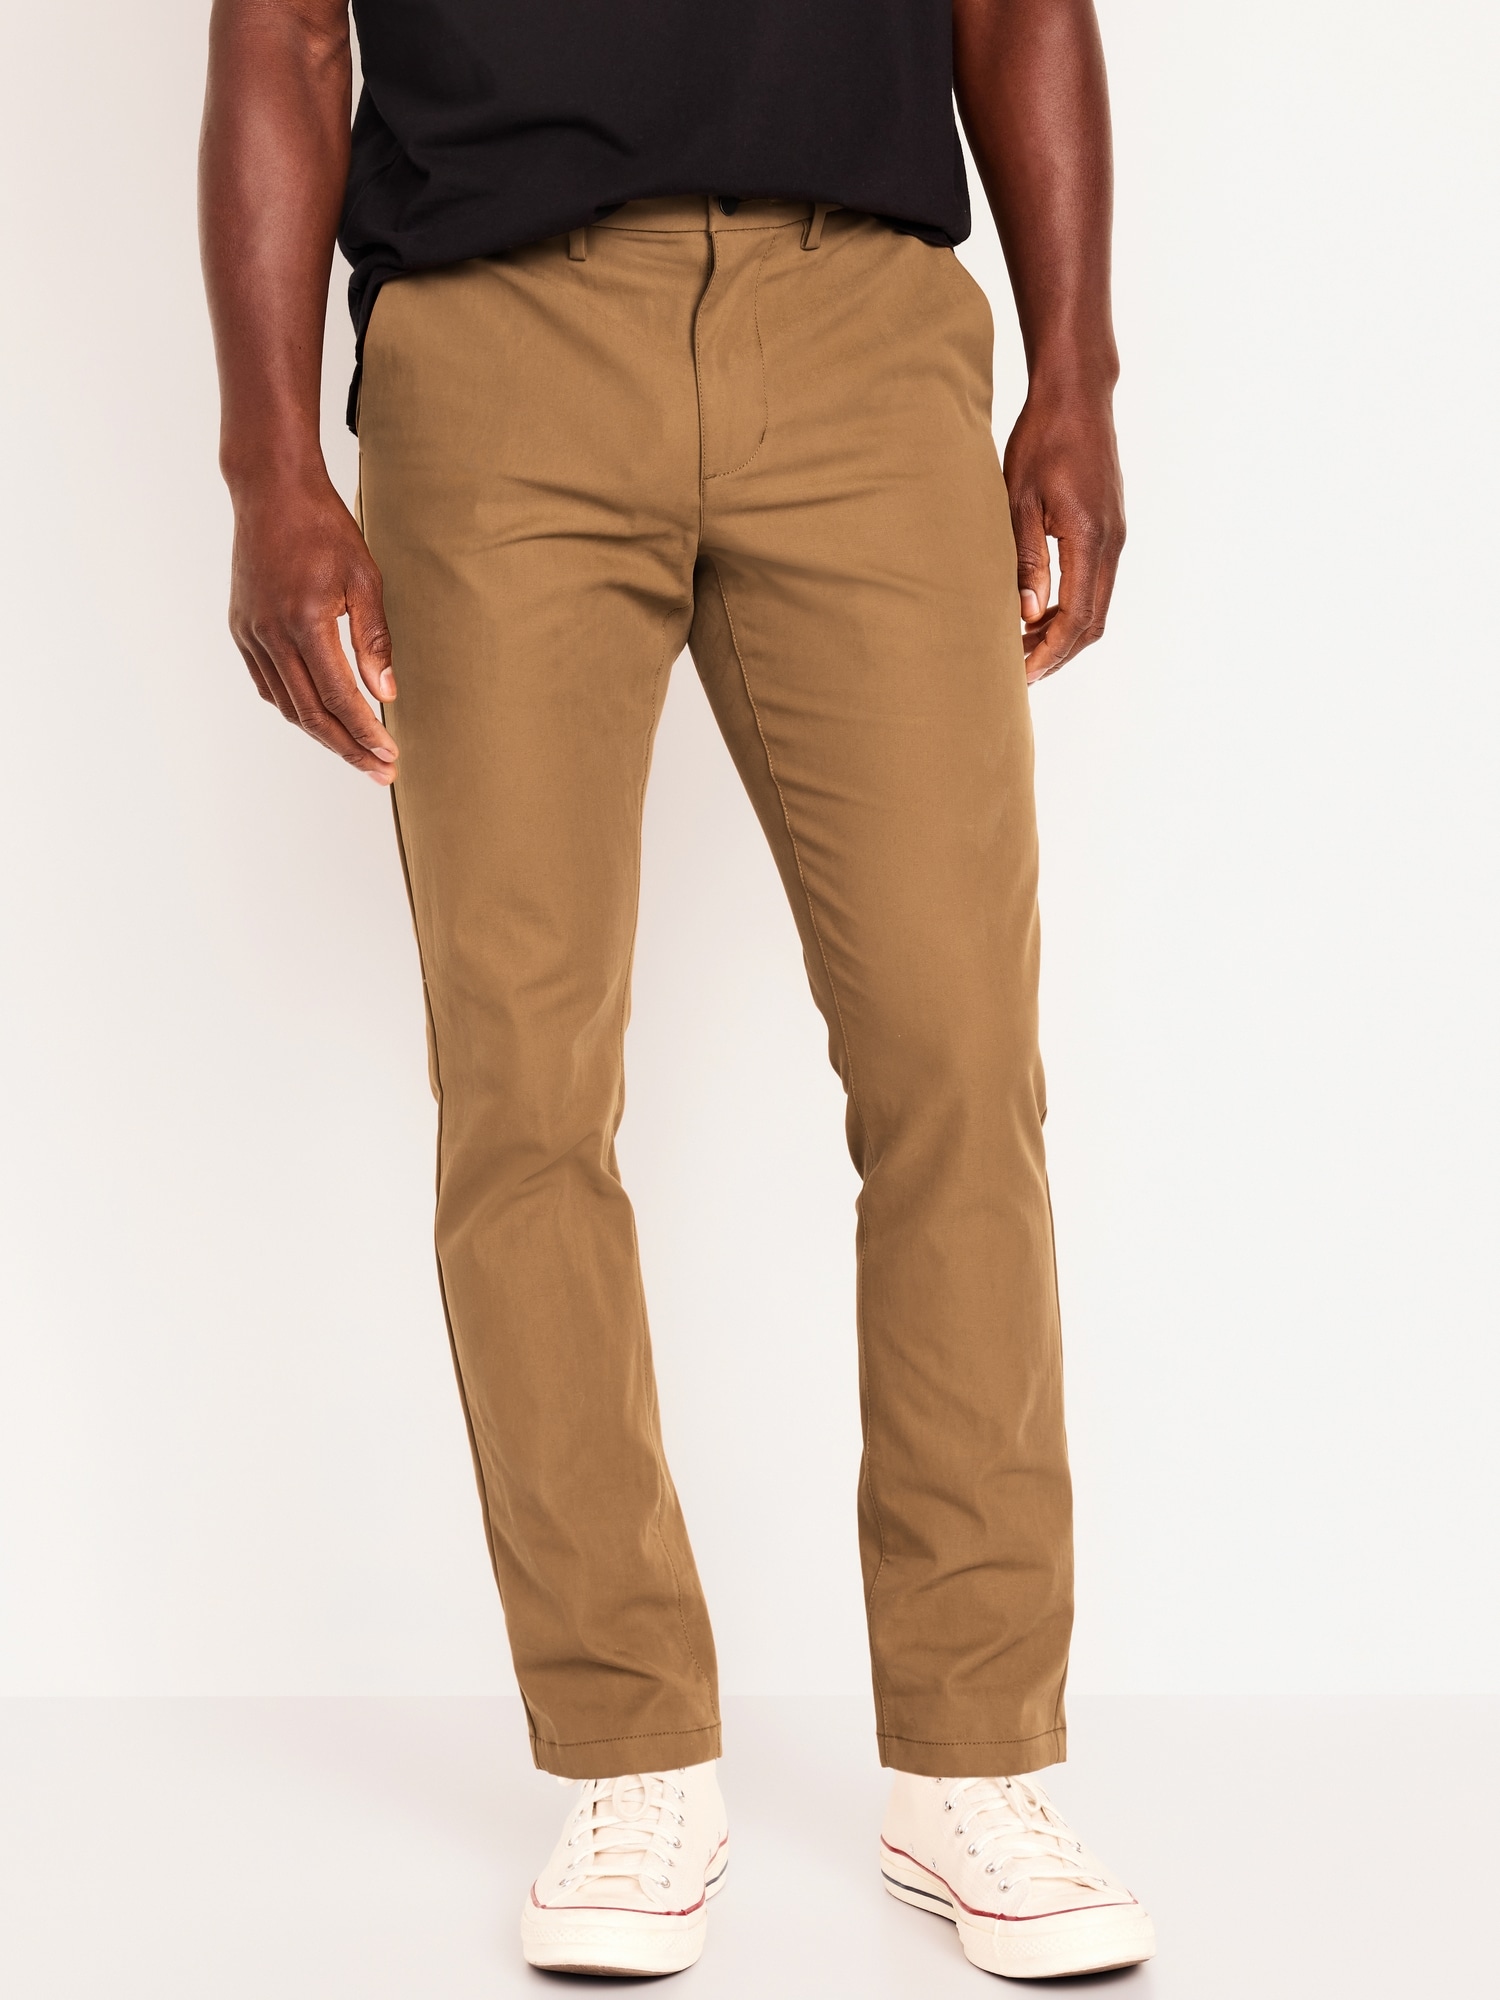 Men's GAP Blue Khaki Chino Pants - Size 33x32 RN 54023